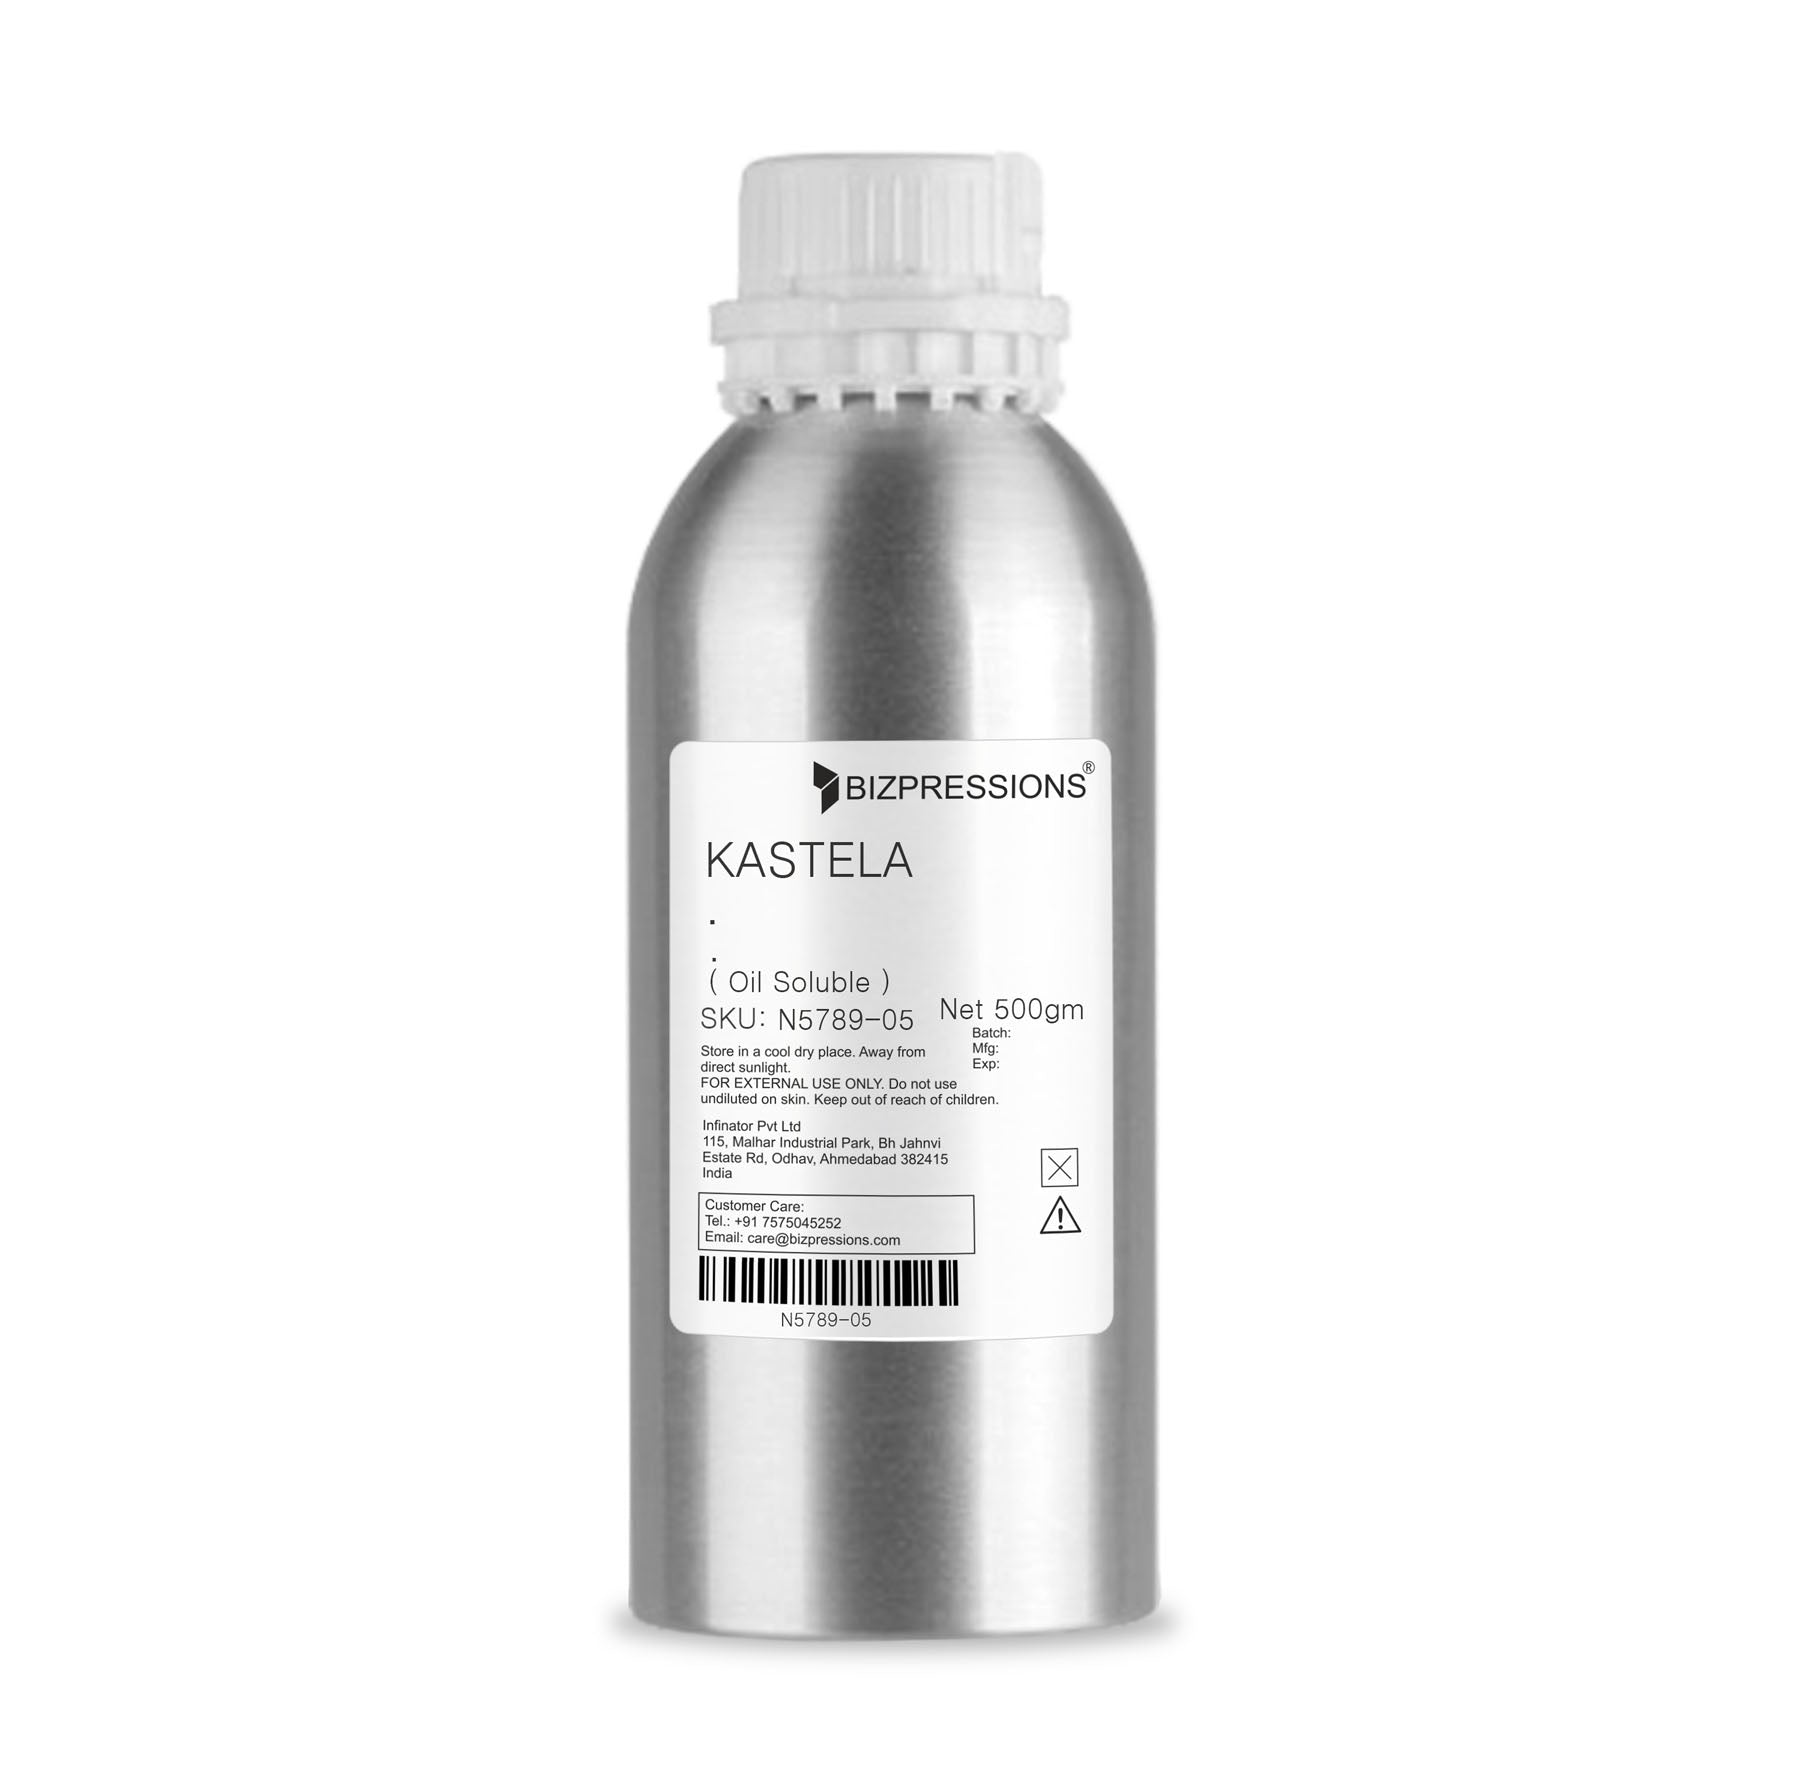 KASTELA - Fragrance ( Oil Soluble ) - 500 gm